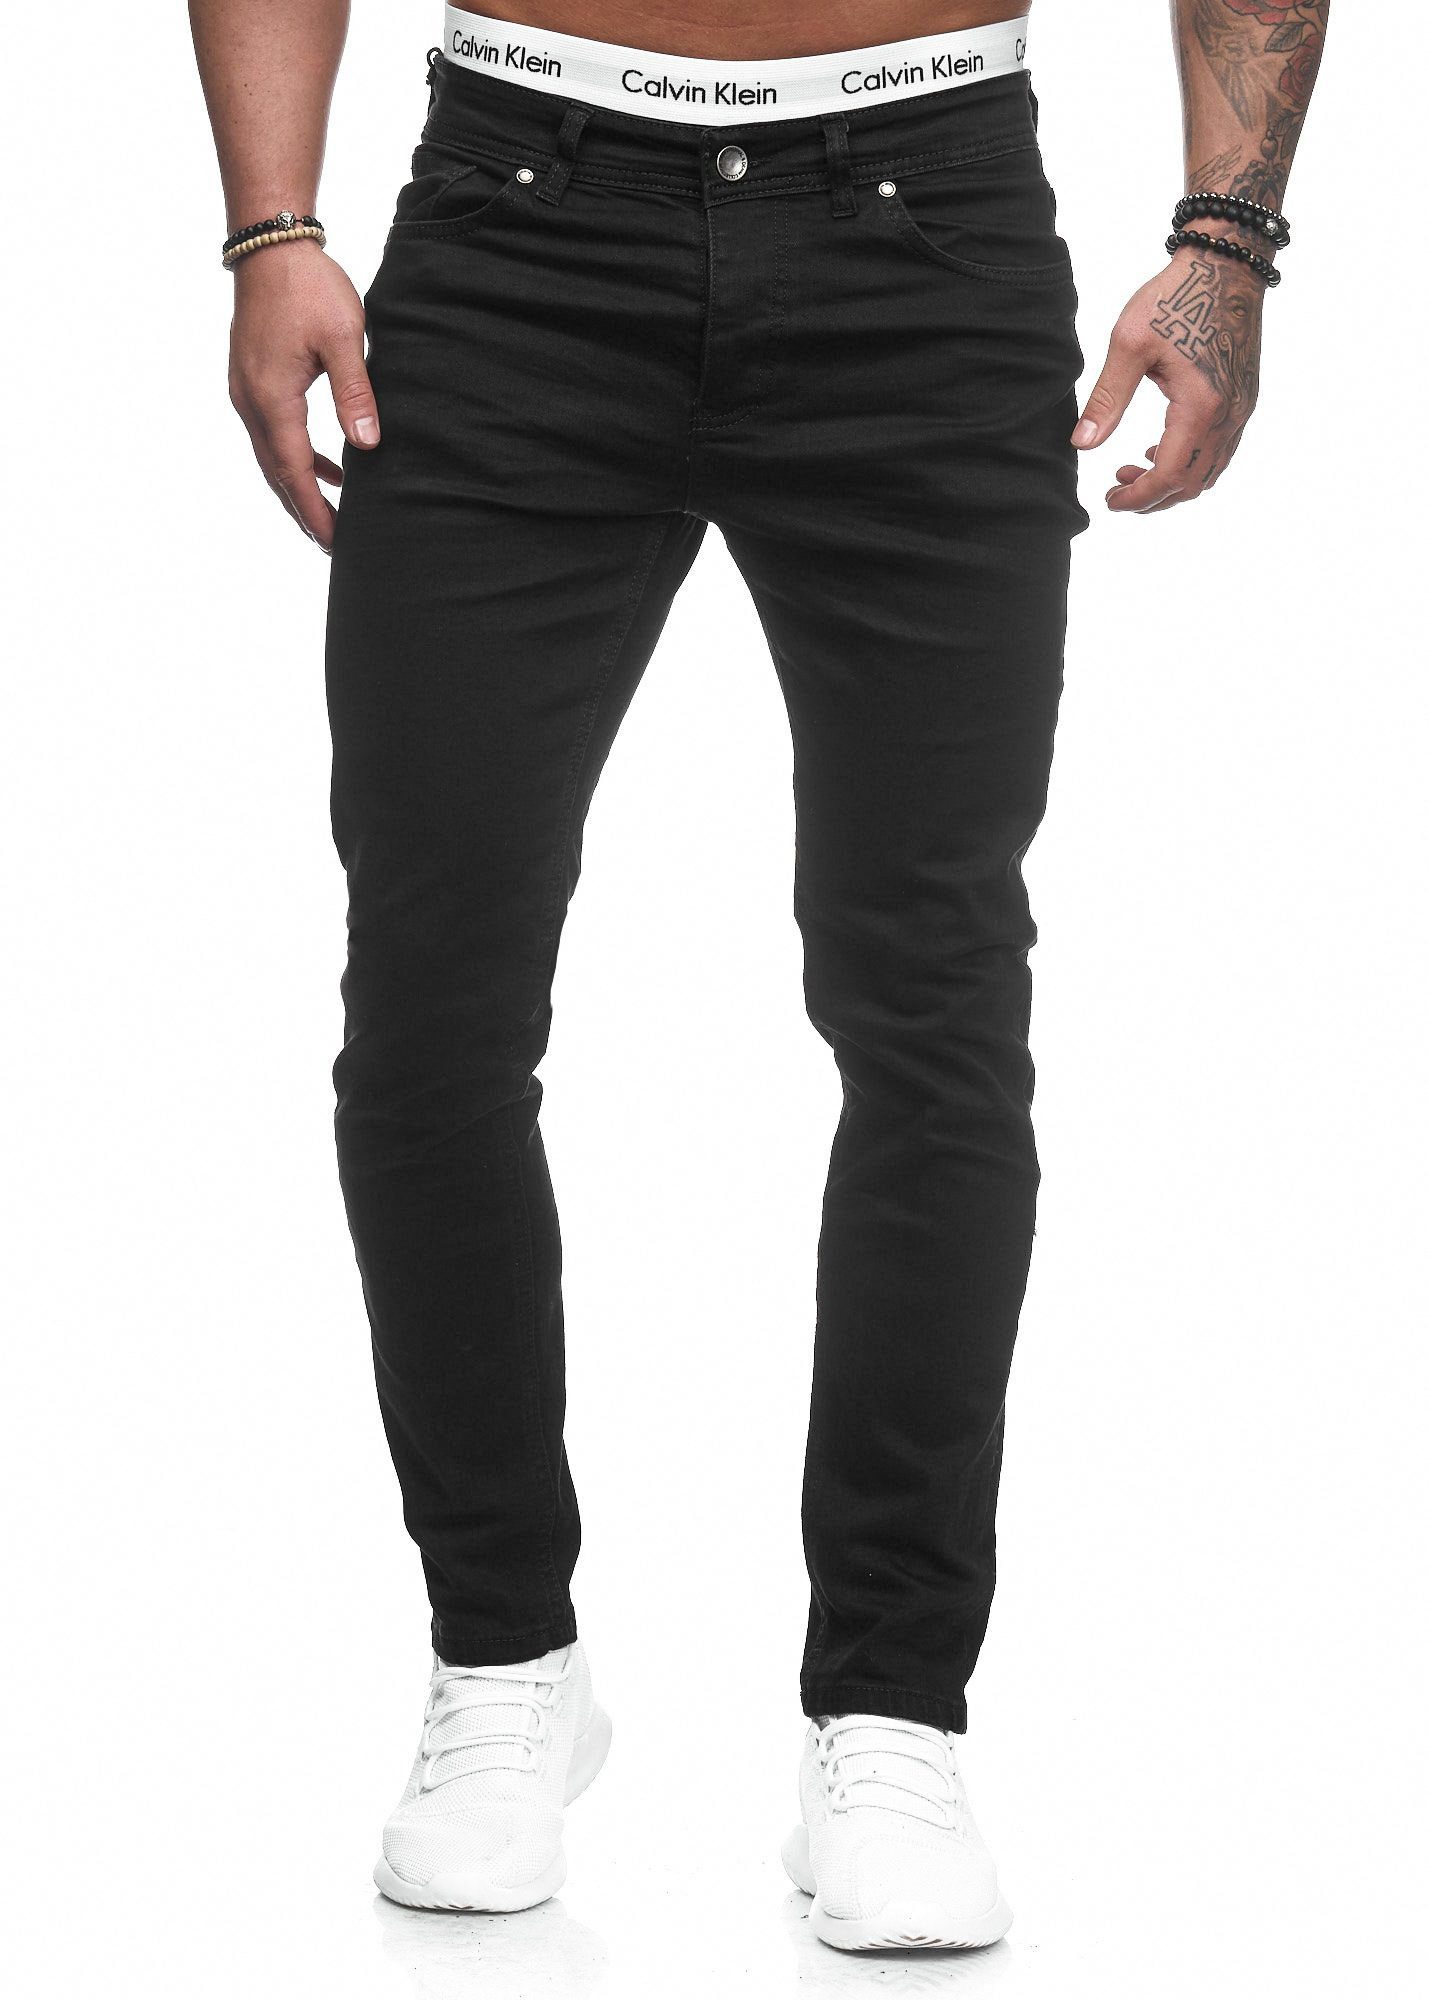 Code47 Fit 5078 Hose Herren Schwarz Jeans Slim-fit-Jeans Slim Chino Jeanshose Designer Stretch Basic